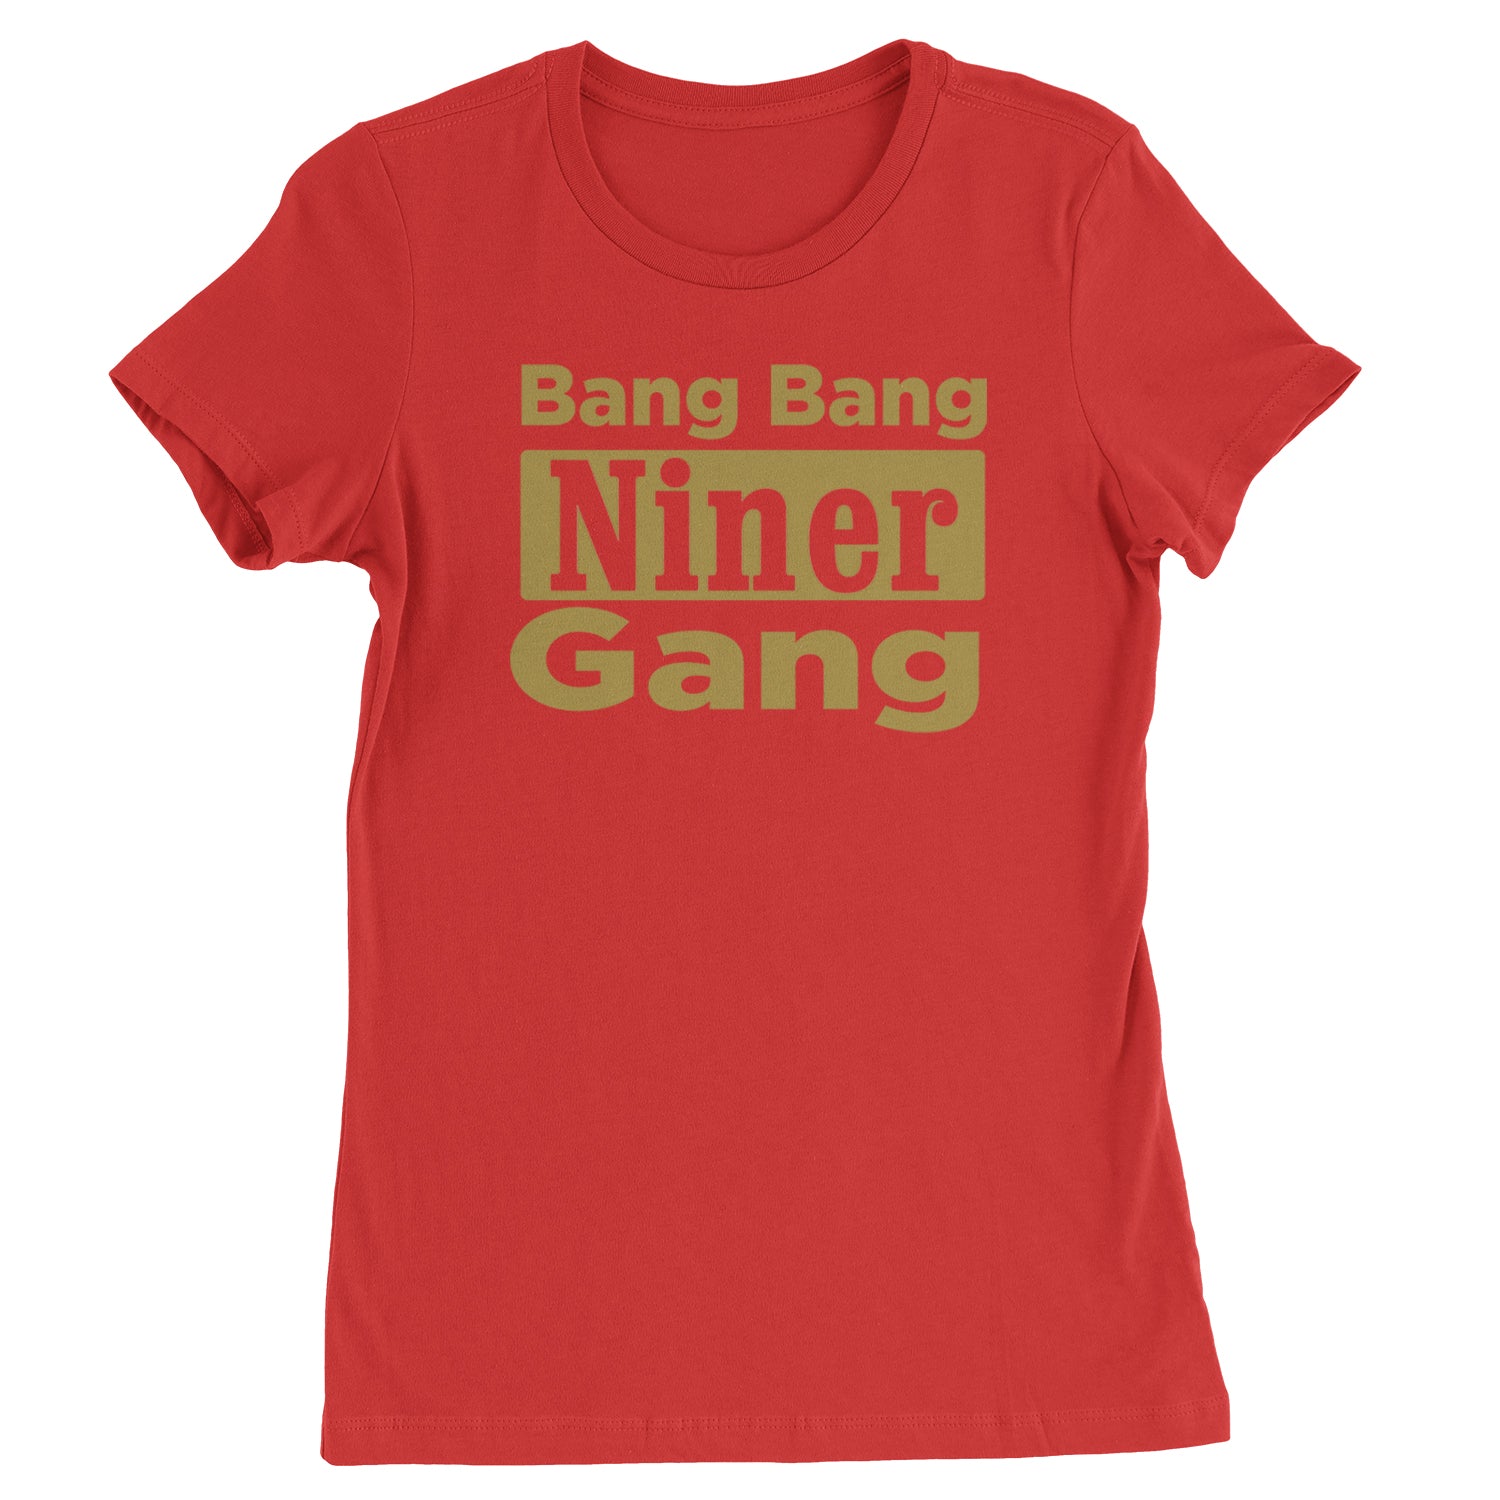 Bang Bang Niner Gang San Francisco Womens T-shirt